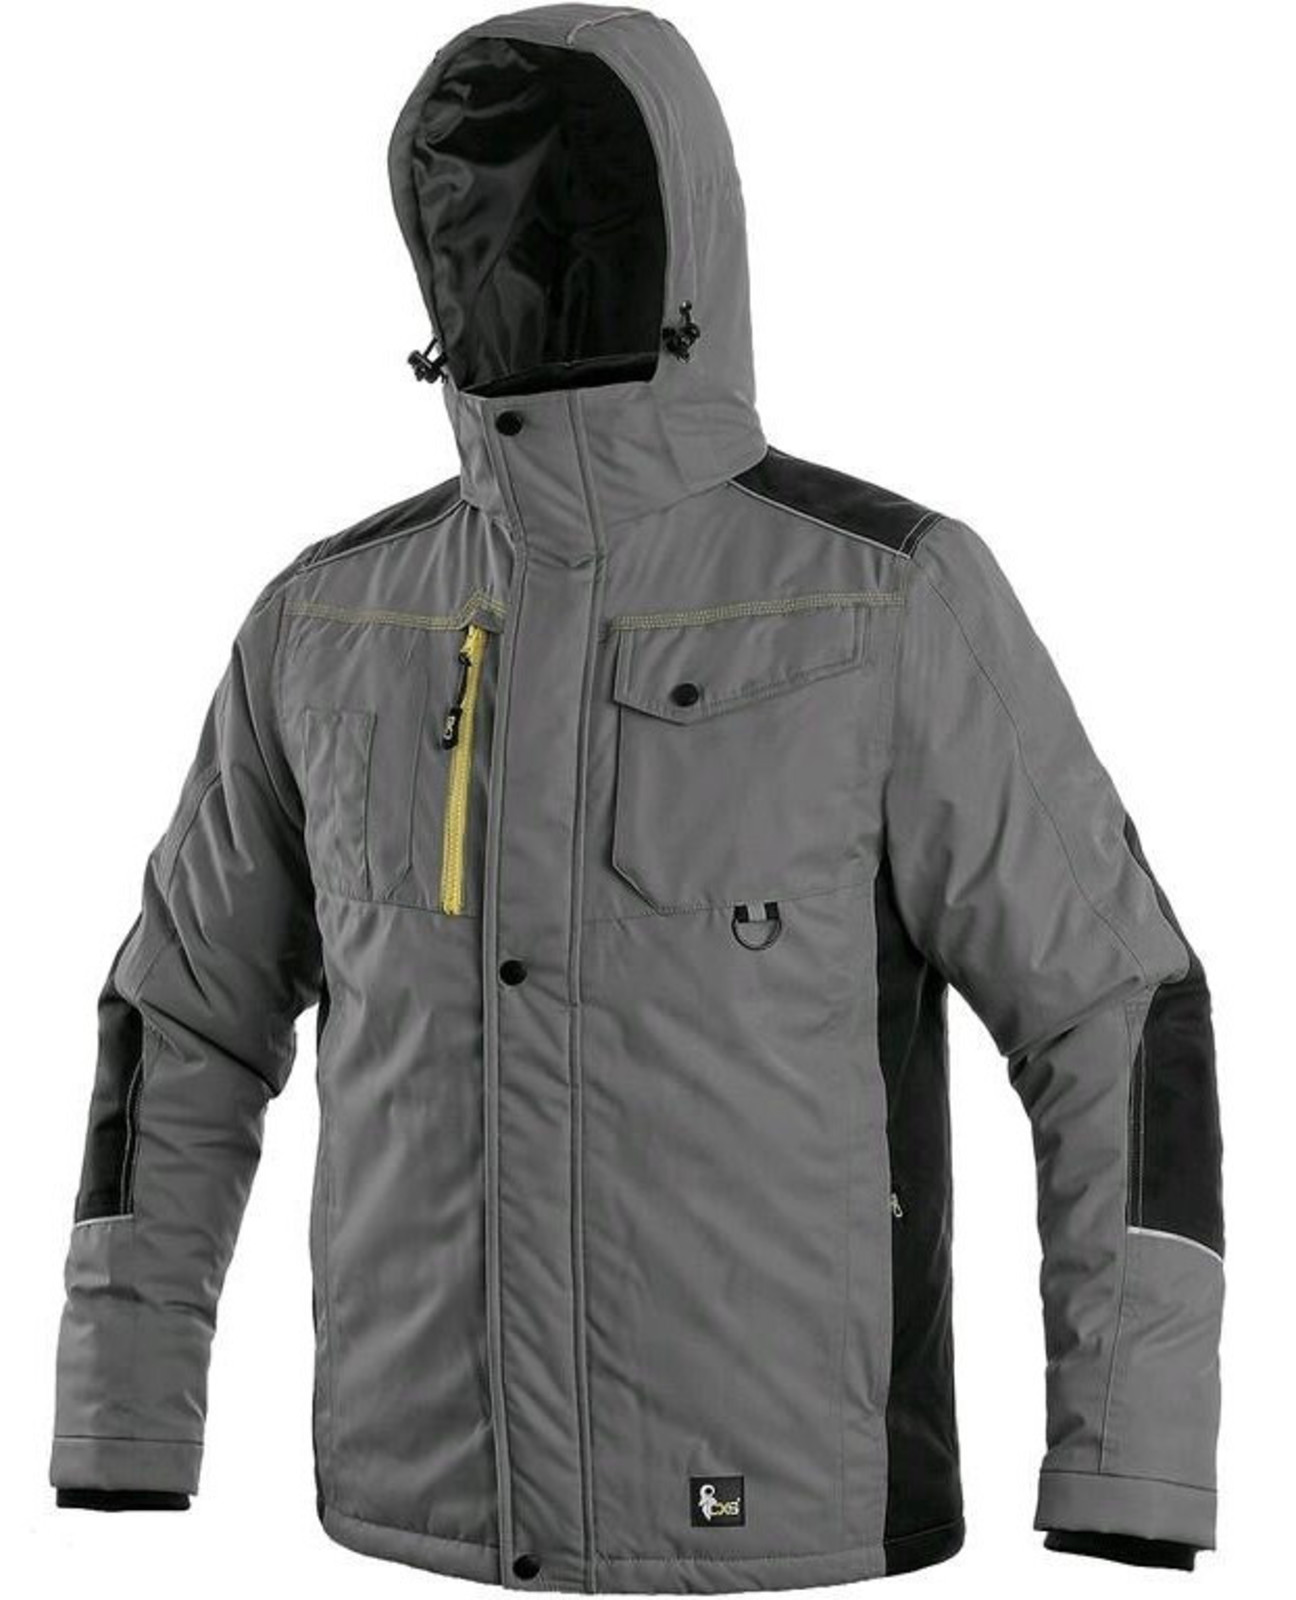 Zimná pracovná bunda CXS Baltimore - veľkosť: M, farba: sivá/čierna